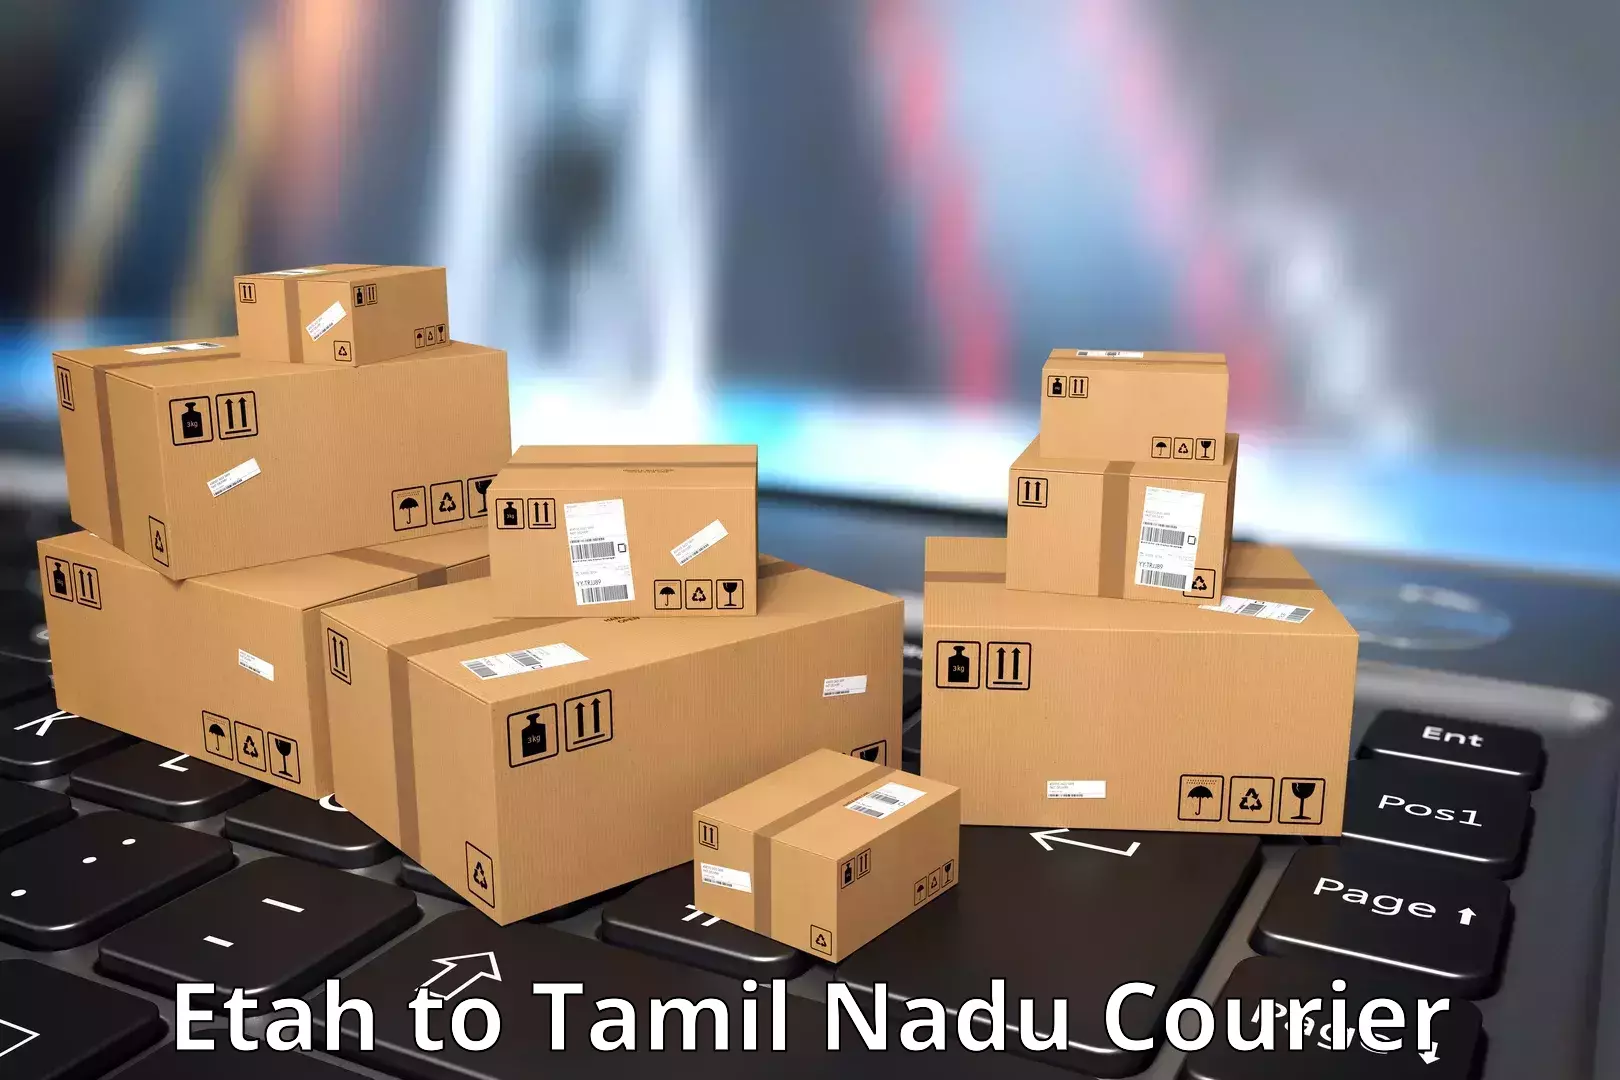 Reliable package handling Etah to Karur